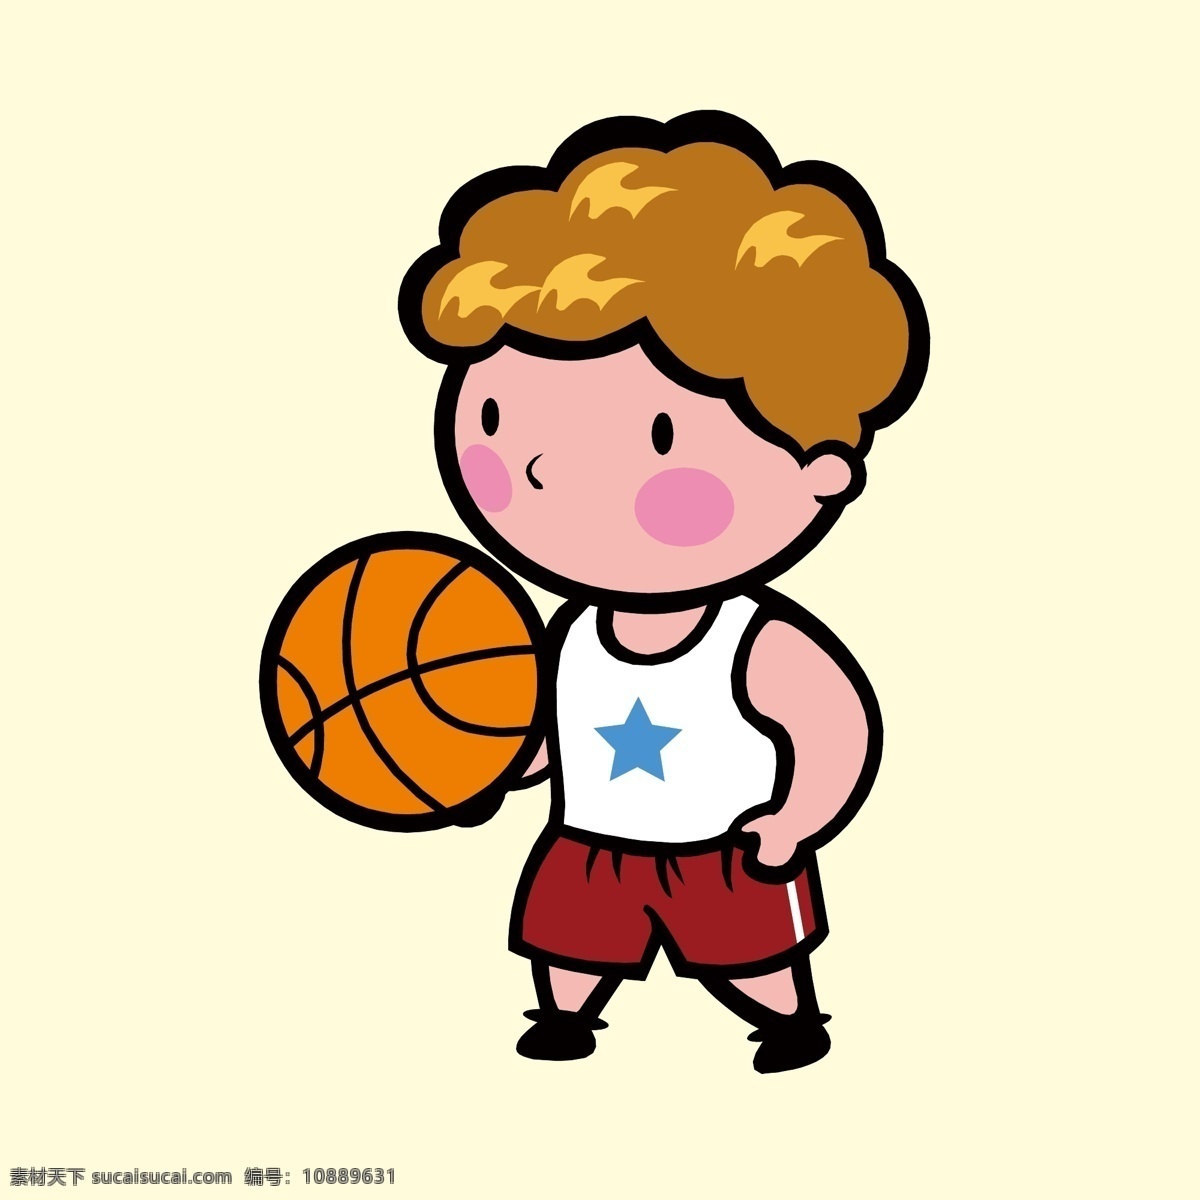 打篮球 篮球运动 篮球运动员 篮球比赛 职业人物插画 卡通职业人物 人物插画设计 男性人物设计 女性人物设计 儿童人物设计 矢量卡通人物